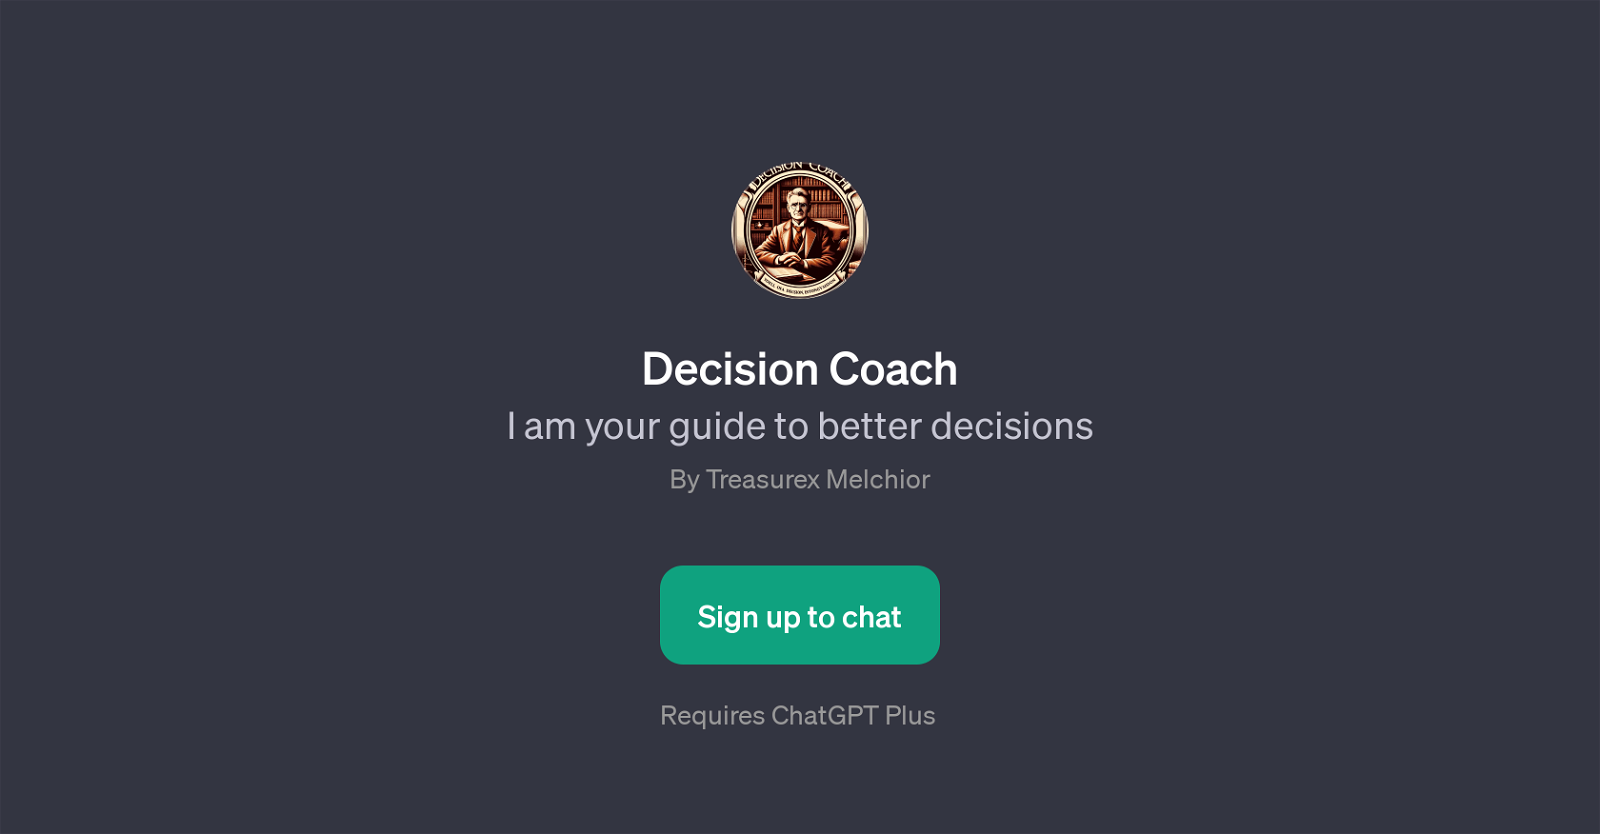 Decision Coach website